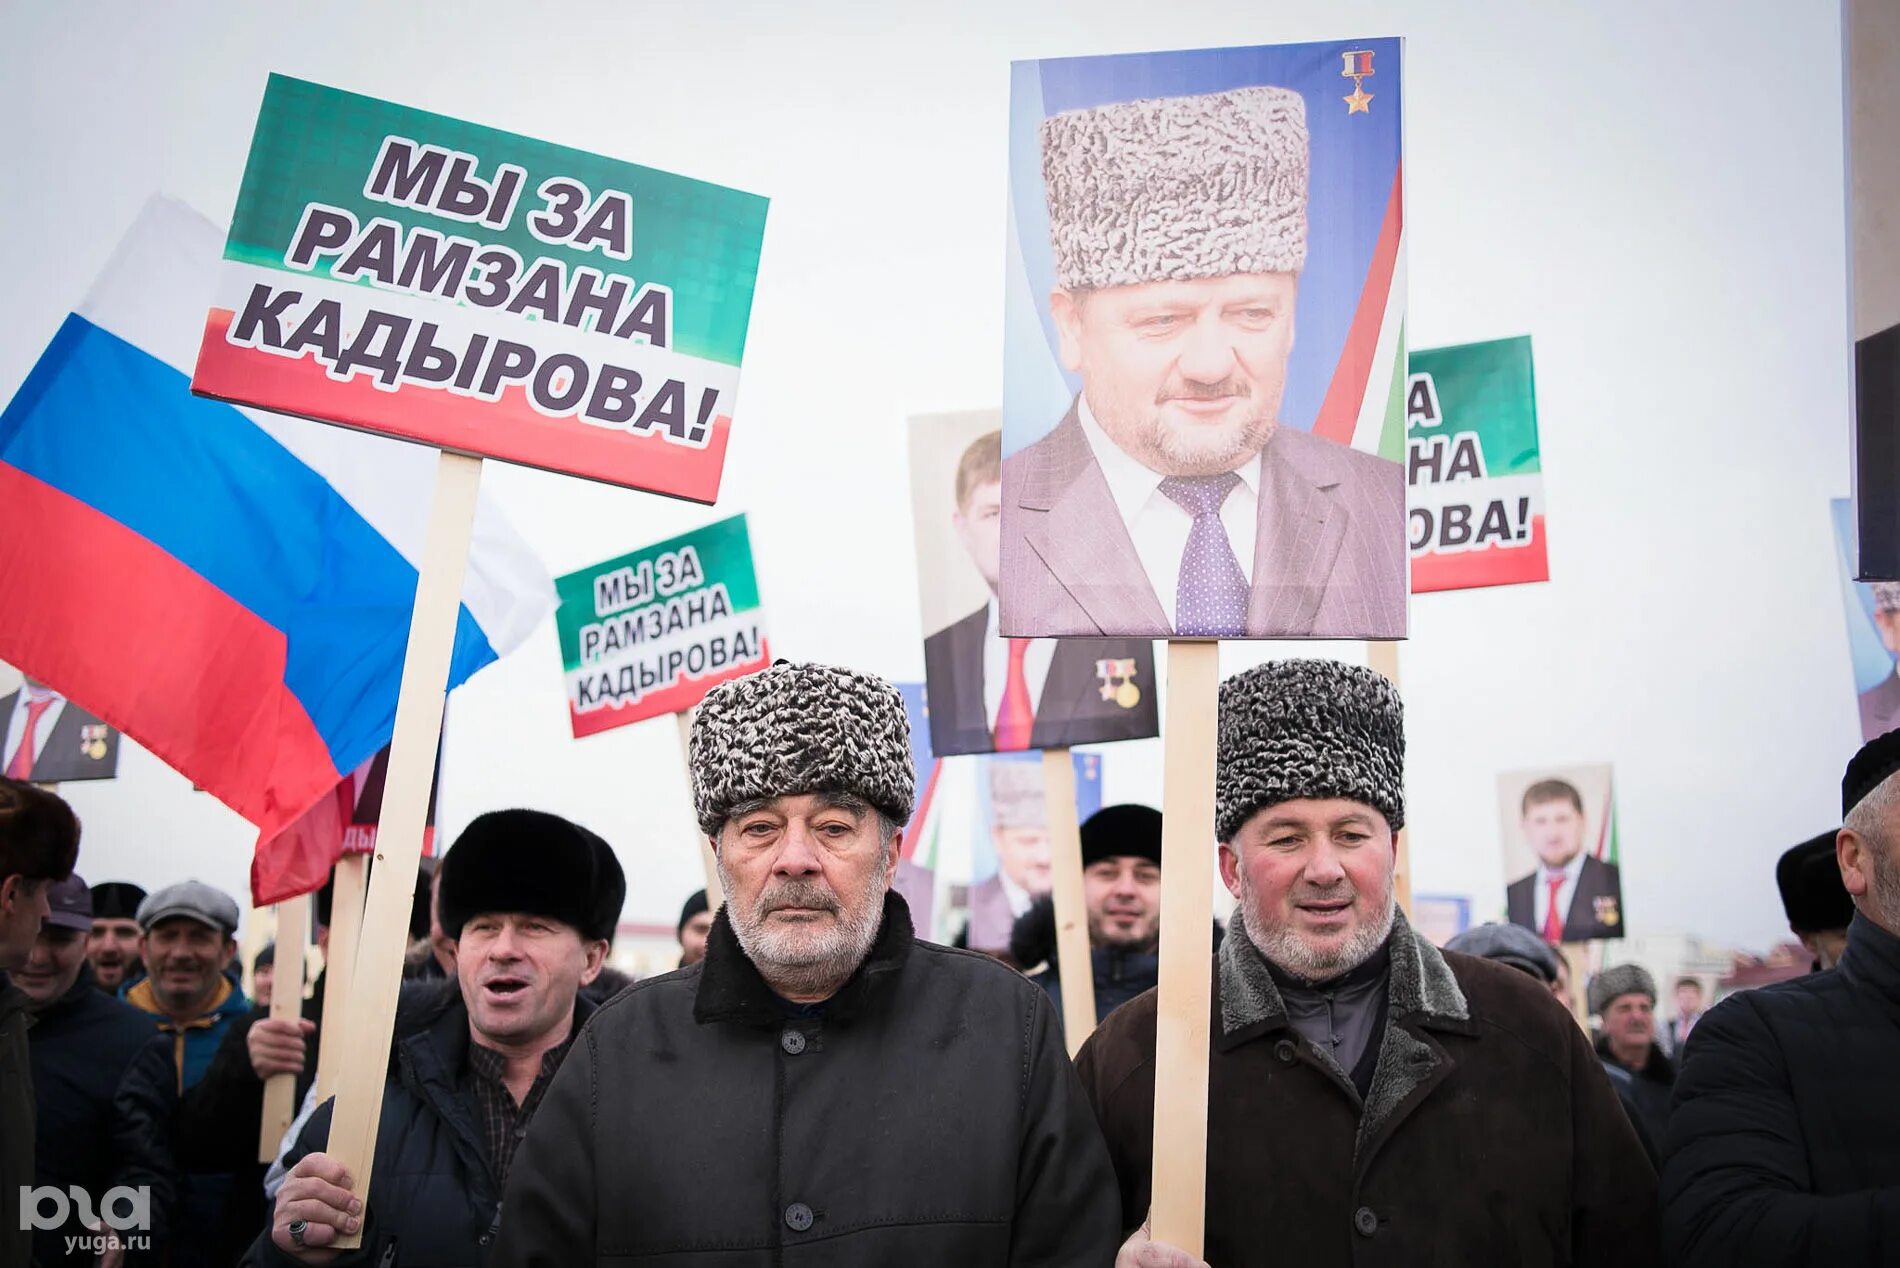 Митинг в Грозном. Даудов выступил на митинге в Грозном. Митинг в поддержку Кадырова в Чечне. Митинг в Грозном большой флаг.